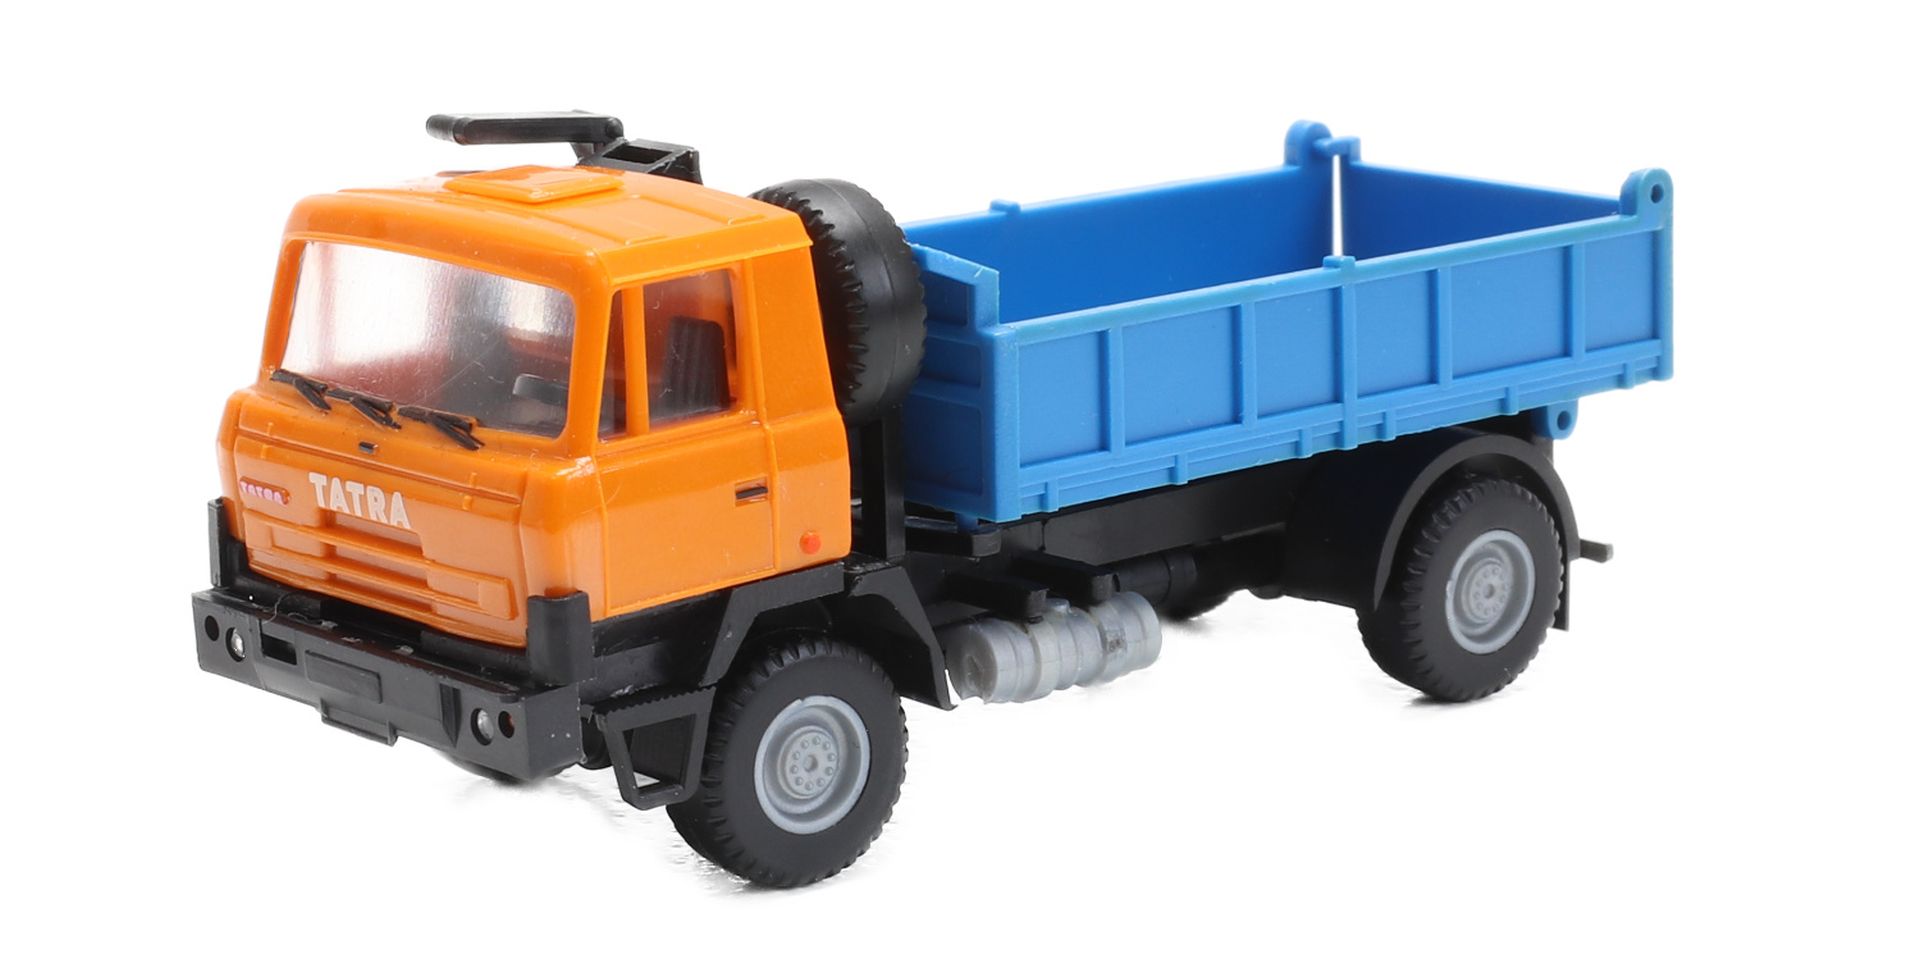 igra 66818178 - Tatra 815 4x4 orange / blau Kipper, Bausatz